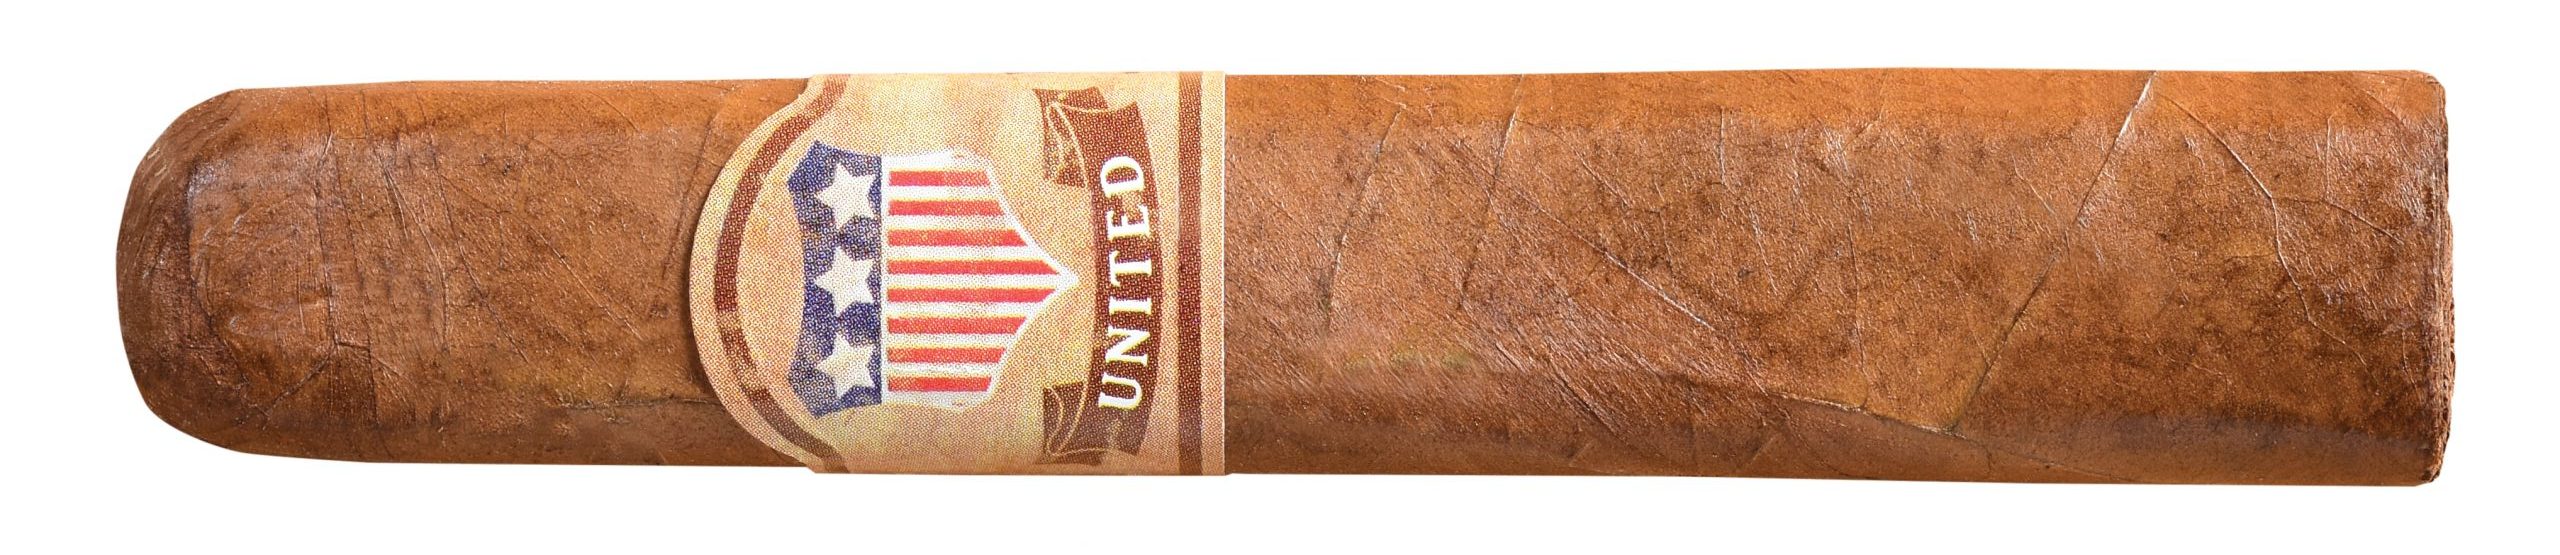 united cigars natural robusto single cigar